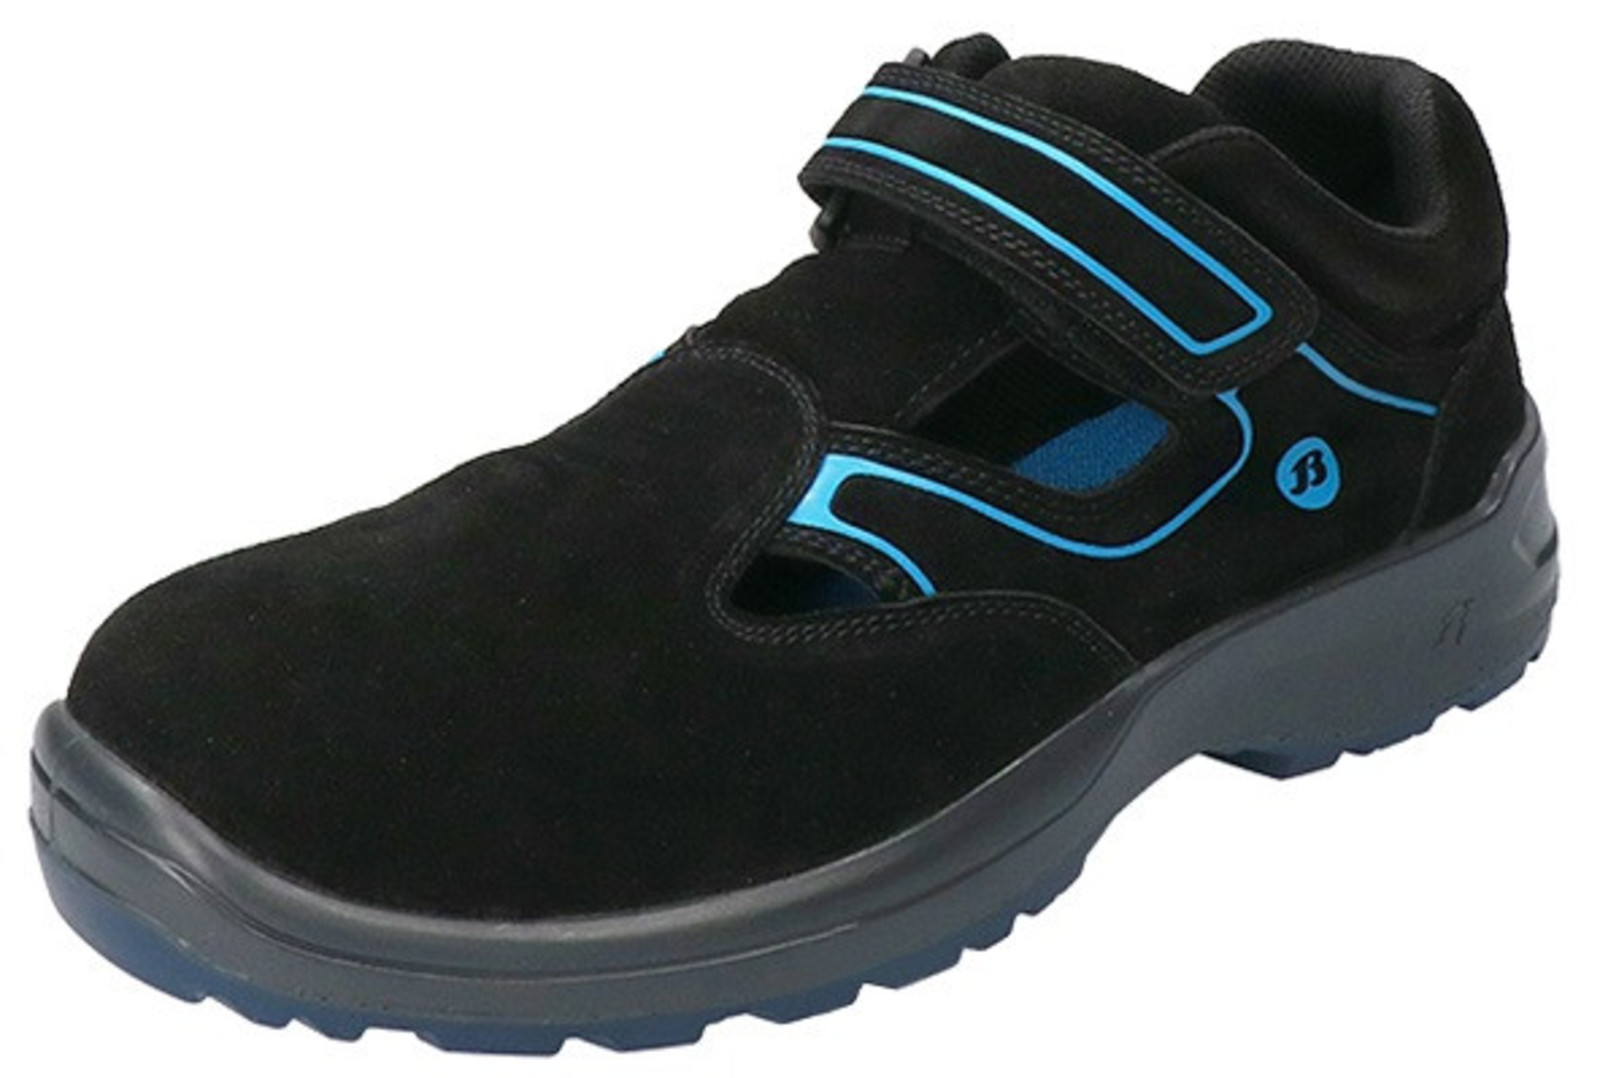 Bezpečnostné sandále Baťa Falcon ESD S1 - veľkosť: 46, farba: čierna